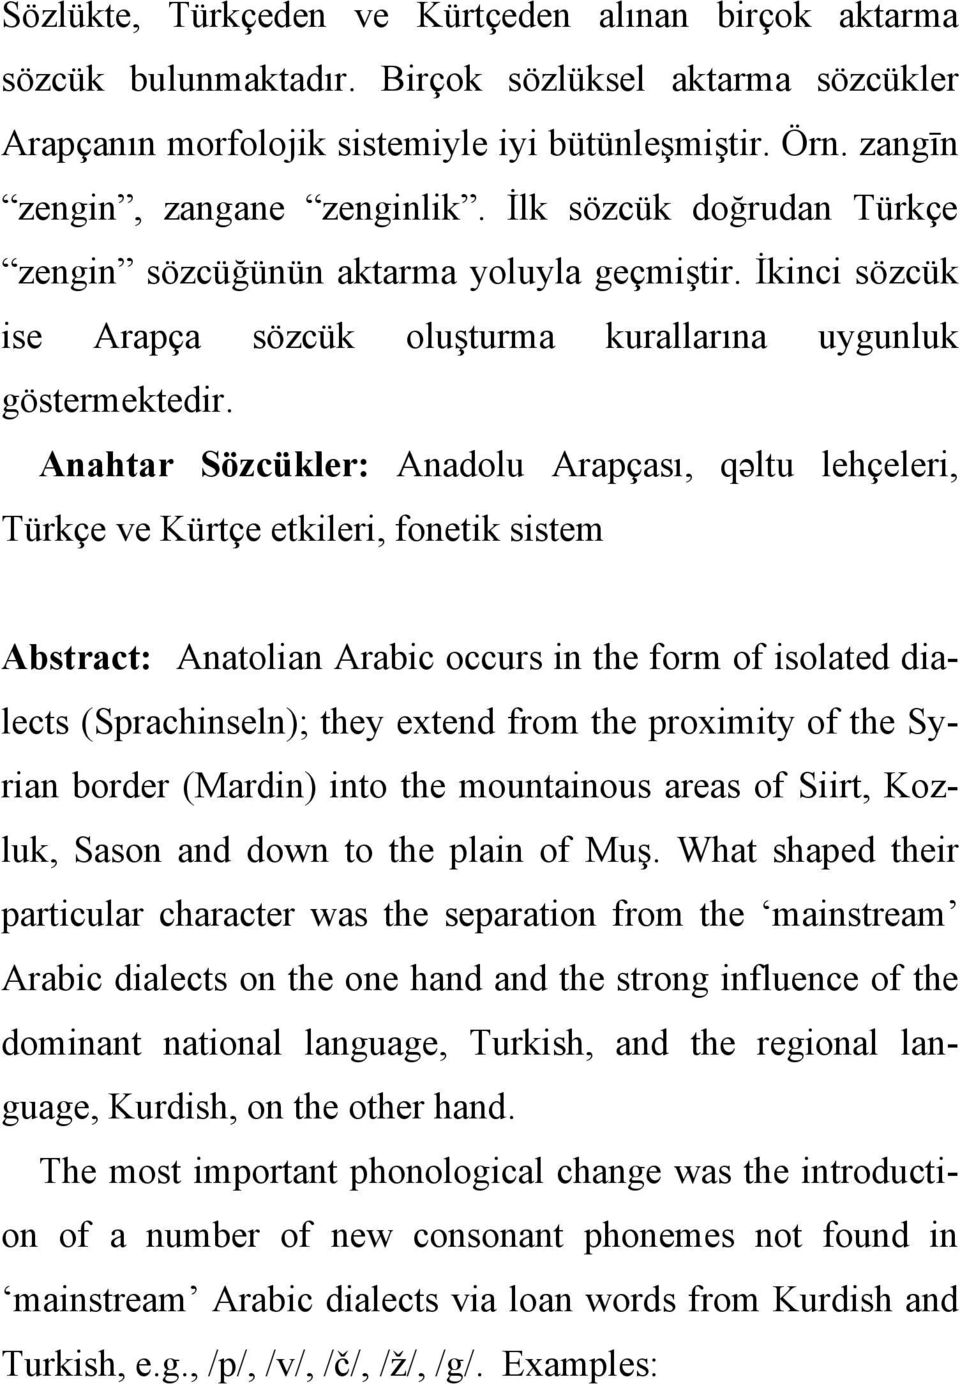 Anahtar Sözcükler: Anadolu Arapçası, qəәltu lehçeleri, Türkçe ve Kürtçe etkileri, fonetik sistem Abstract: Anatolian Arabic occurs in the form of isolated dialects (Sprachinseln); they extend from